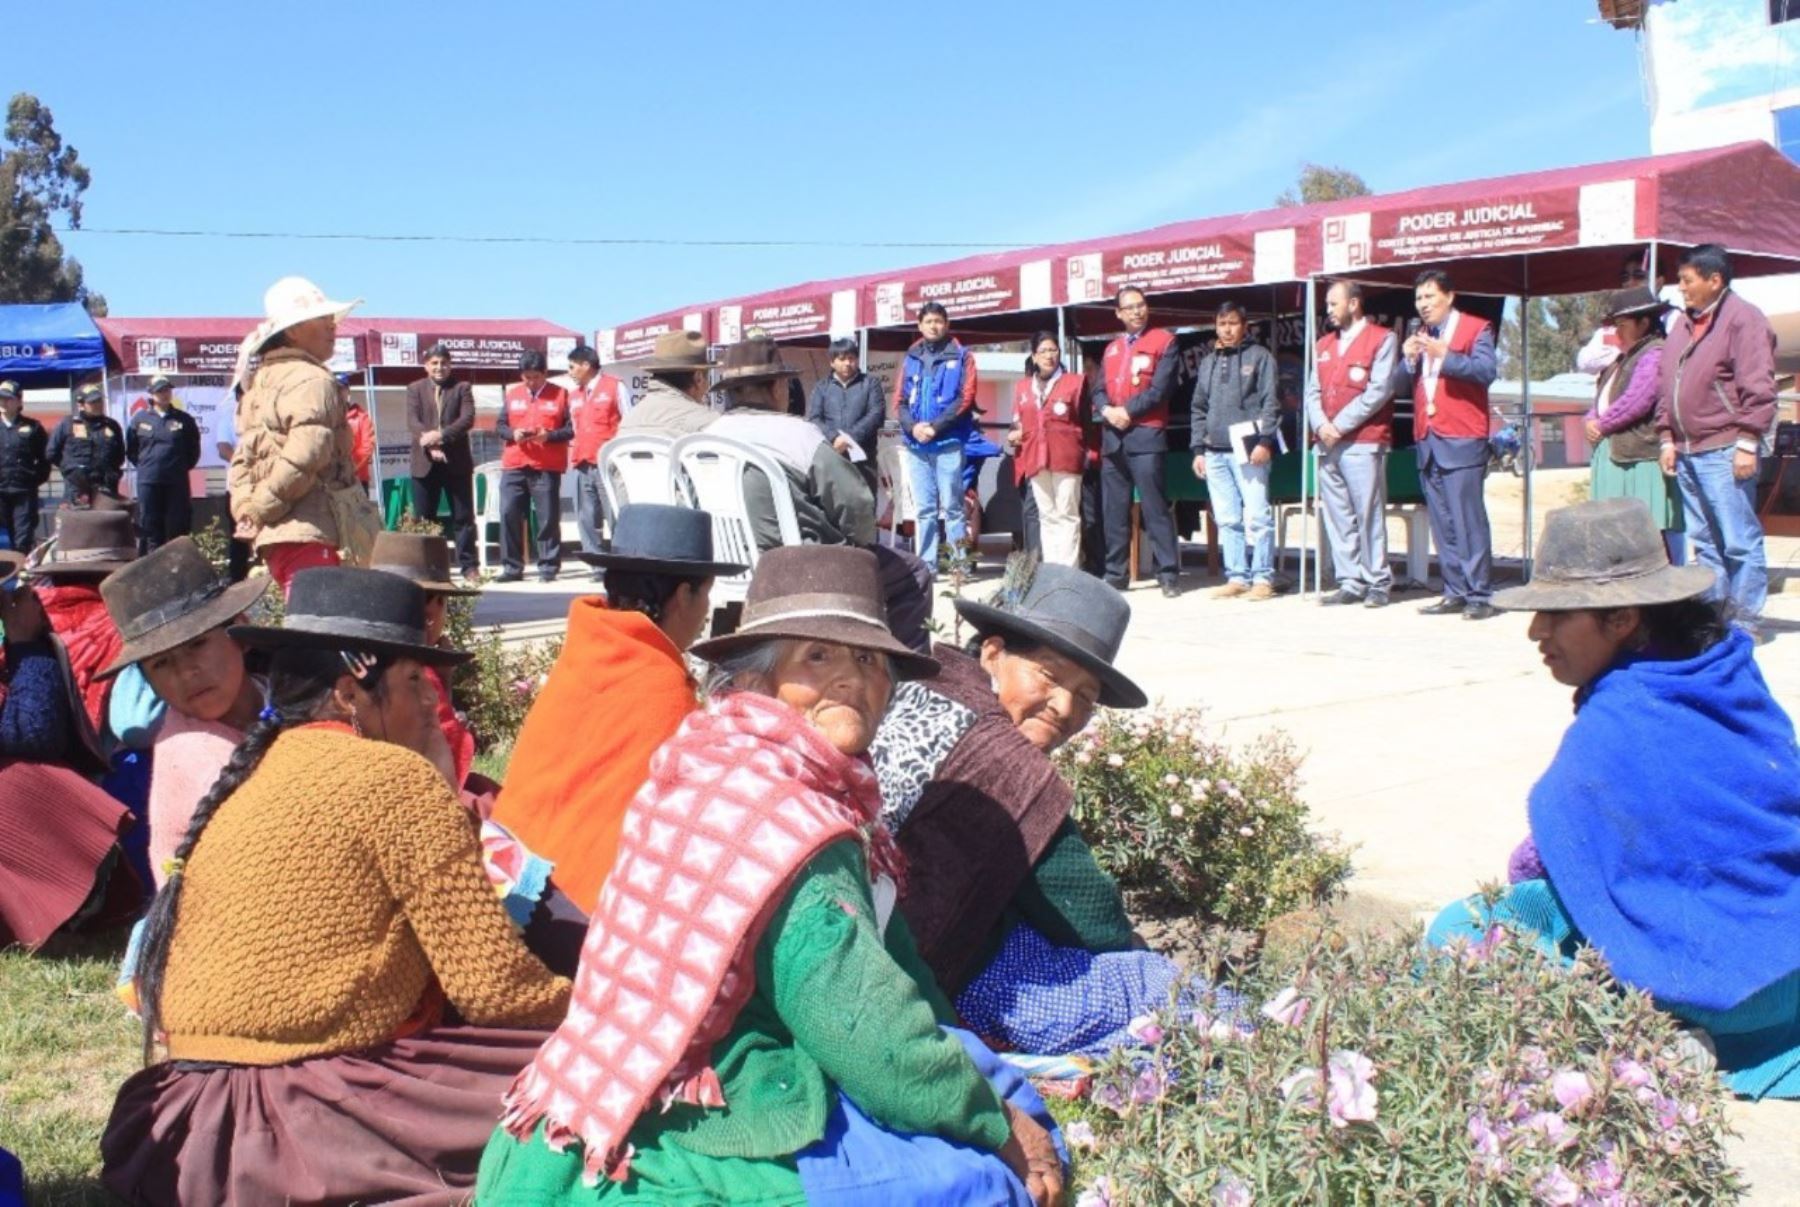 Jueces y servidores judiciales se capacitan en idioma quechua para acercar servicios de justicia a la población. ANDINA/Difusión